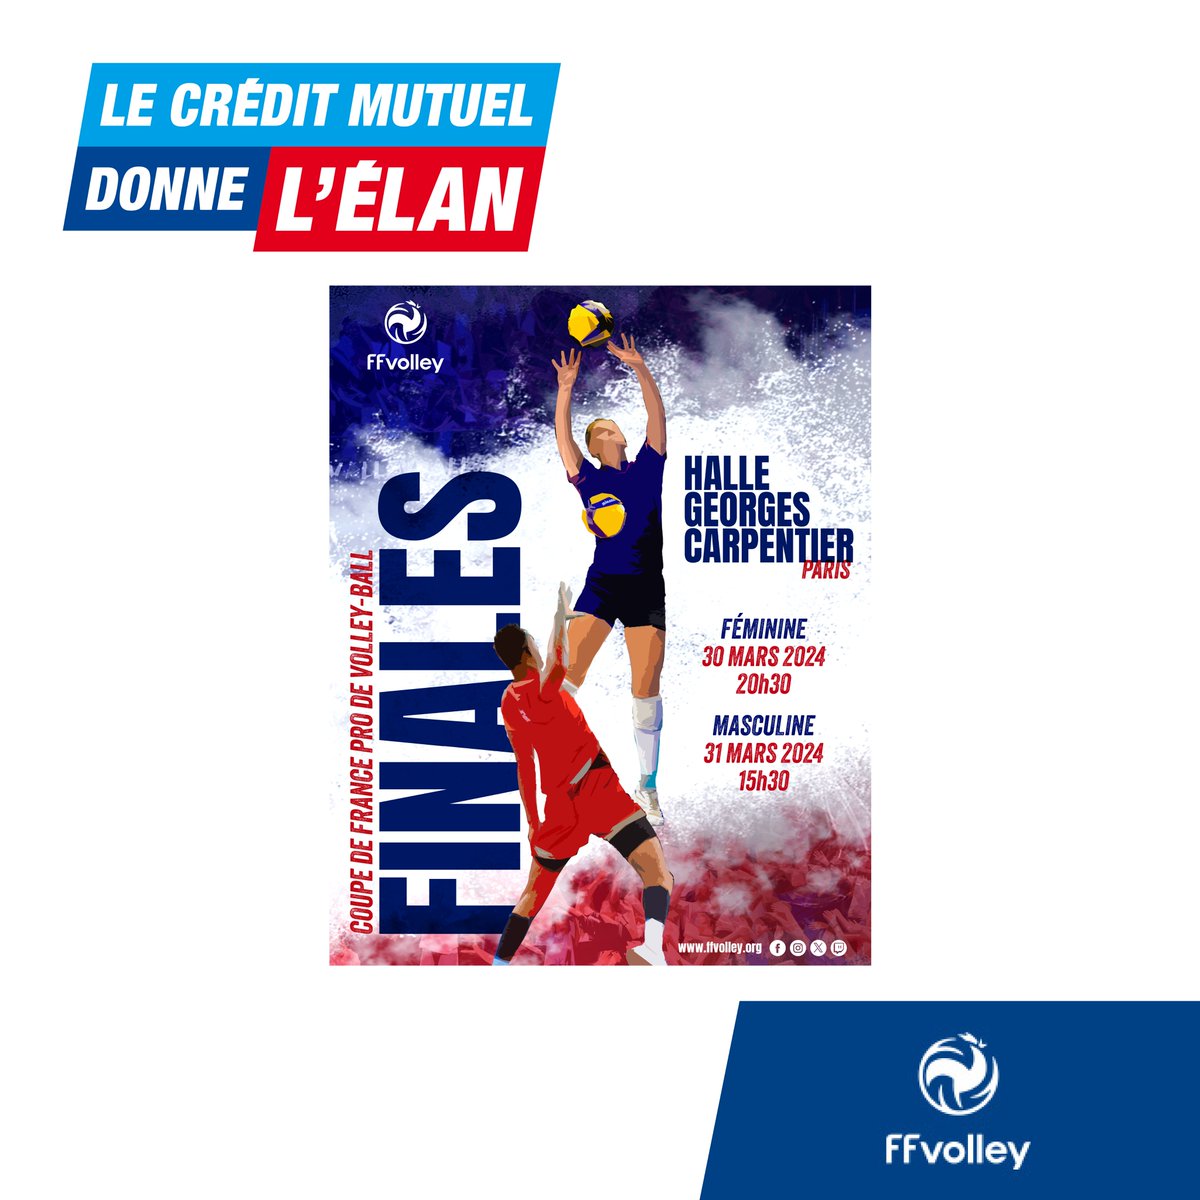 Le Crédit Mutuel donne l’élan à la Coupe de France de Volley-ball. Rendez-vous ce week-end pour les finales féminine et masculine à la Halle Carpentier de Paris. Tous nos encouragements aux sportifs !